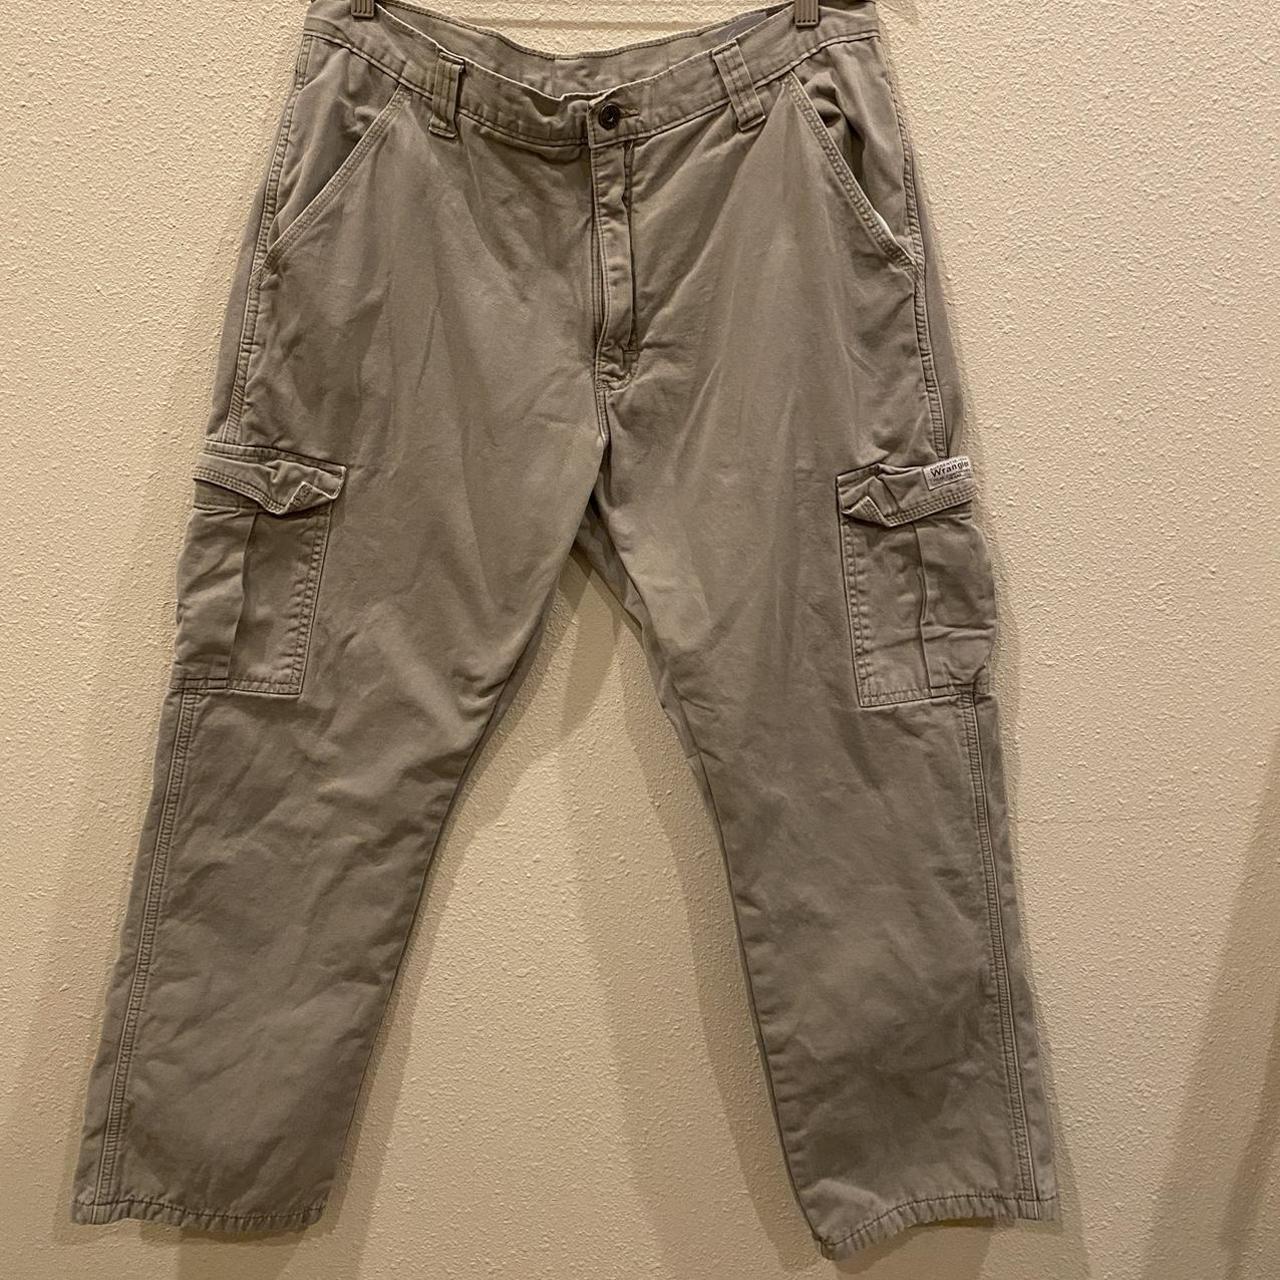 Wrangler fleece lined cargo pants 36 x 30 - Depop